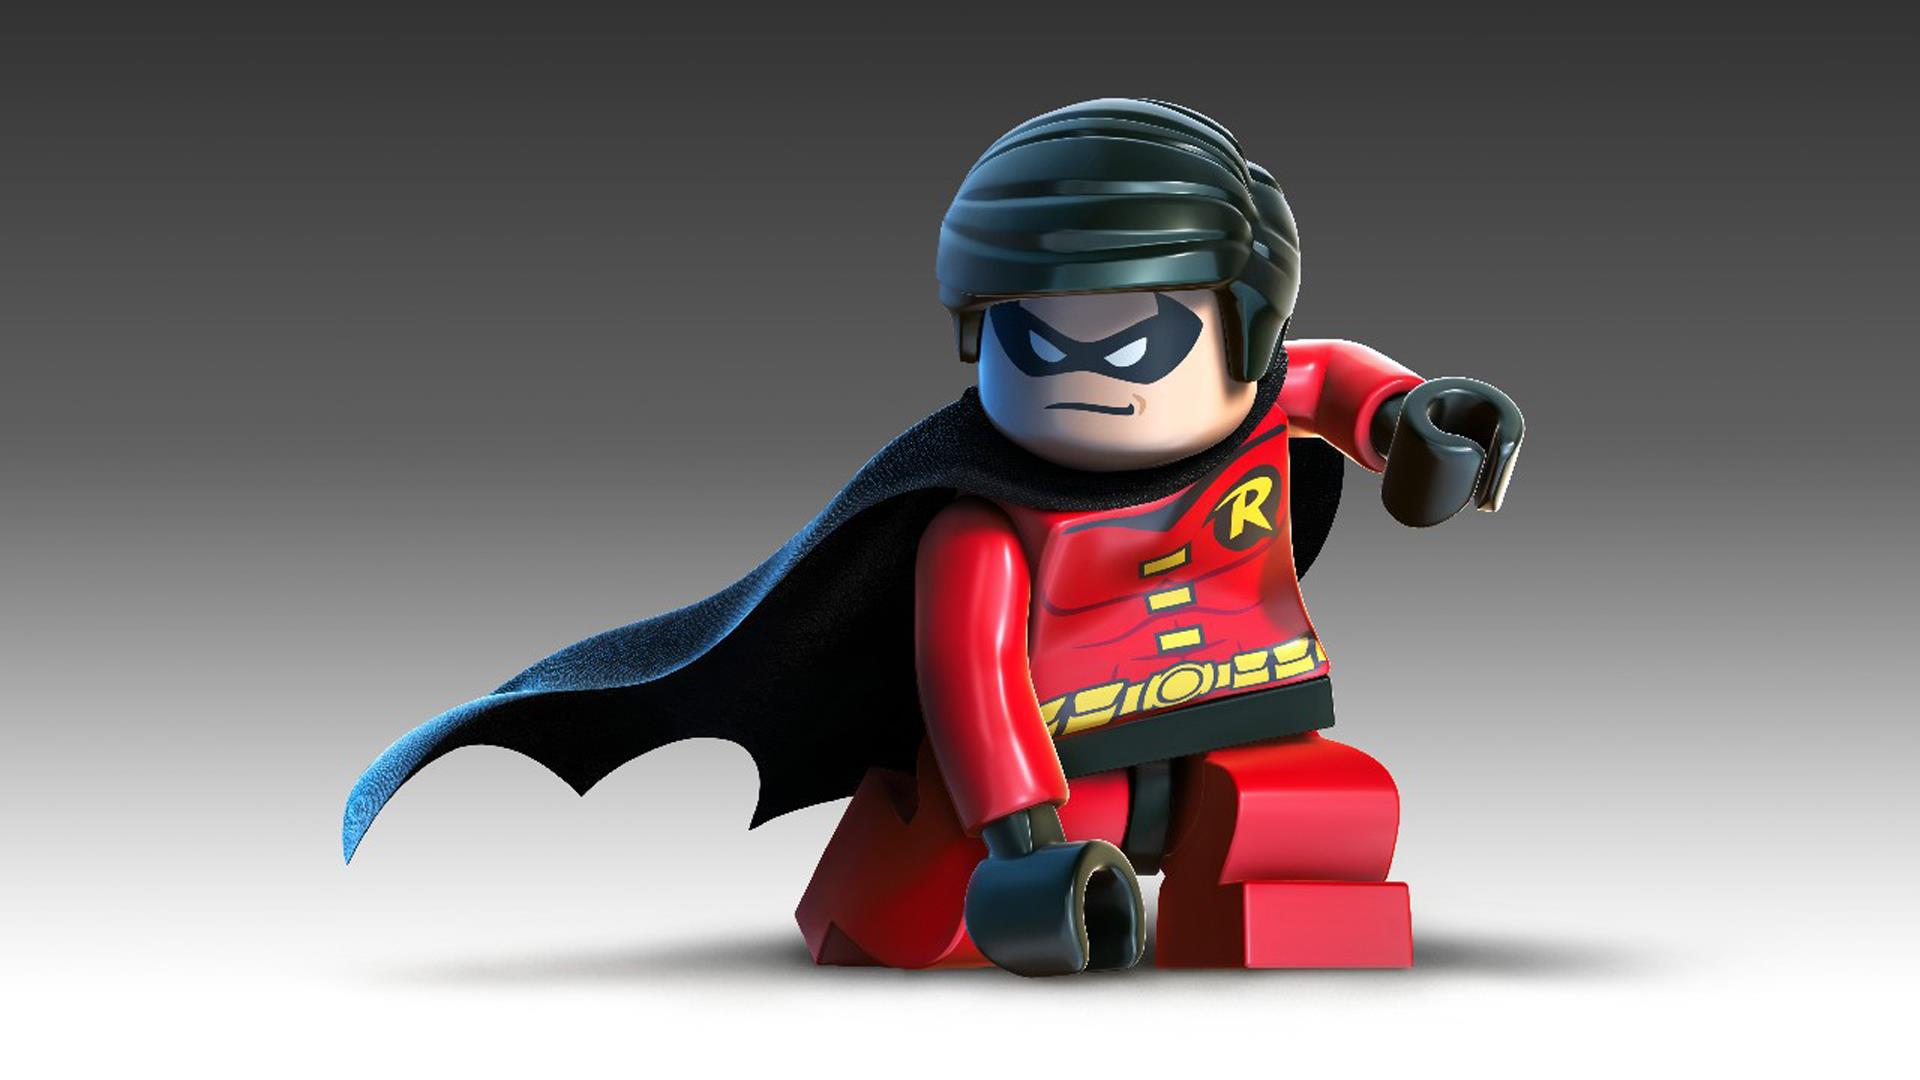 Lego Batman 2 Dc Super Heroes Robin - HD Wallpaper 